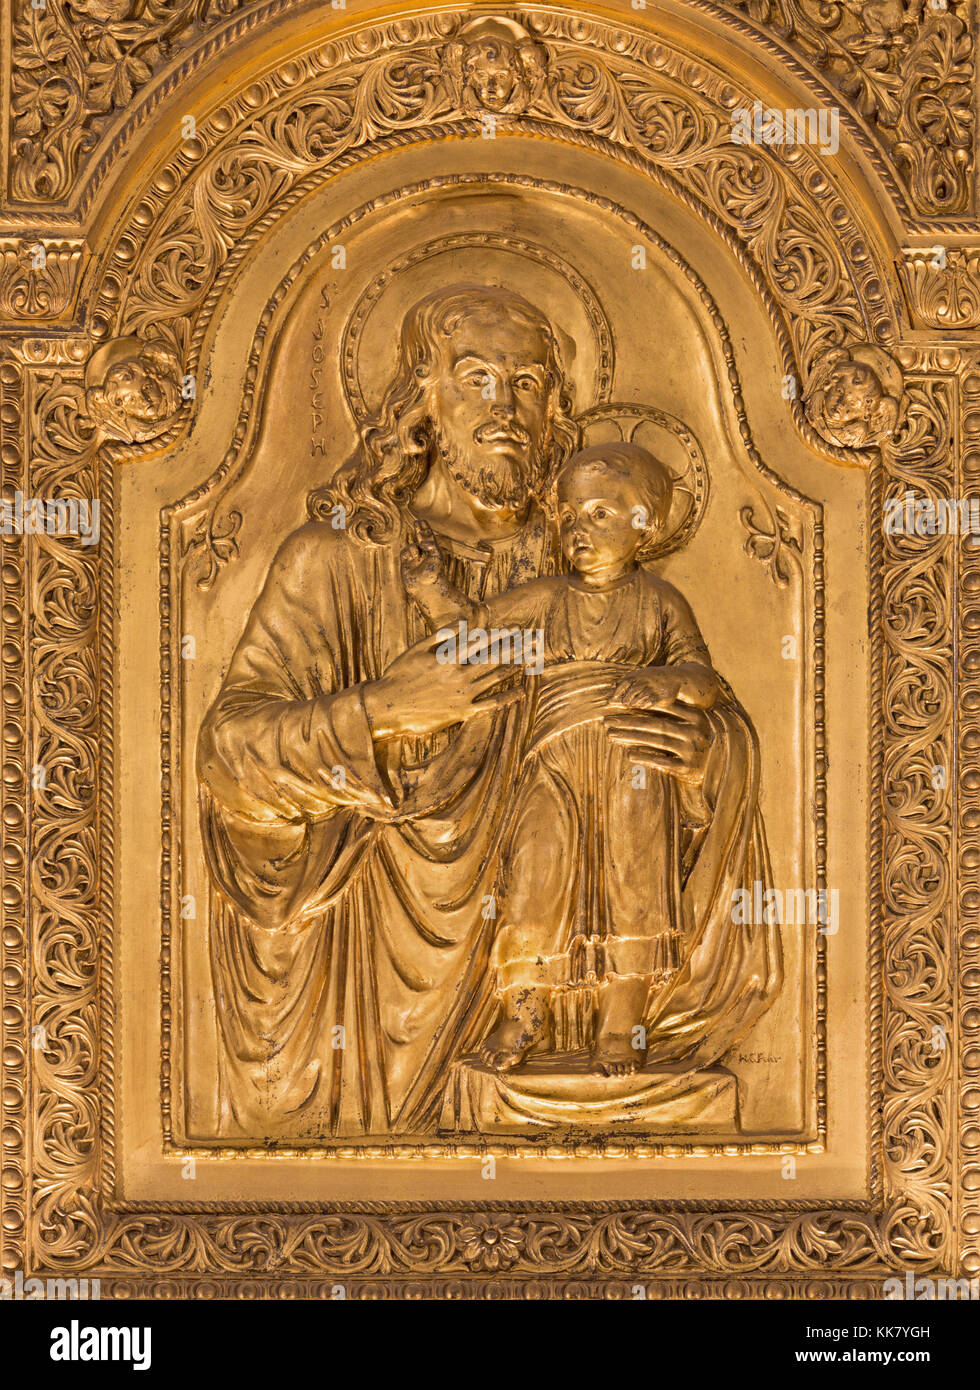 Paris, France - 17 septembre 2017 : Le relief de st. Joseph dans la cathédrale de Westminster par Henry Charles fehr (1867 - 1940) Banque D'Images